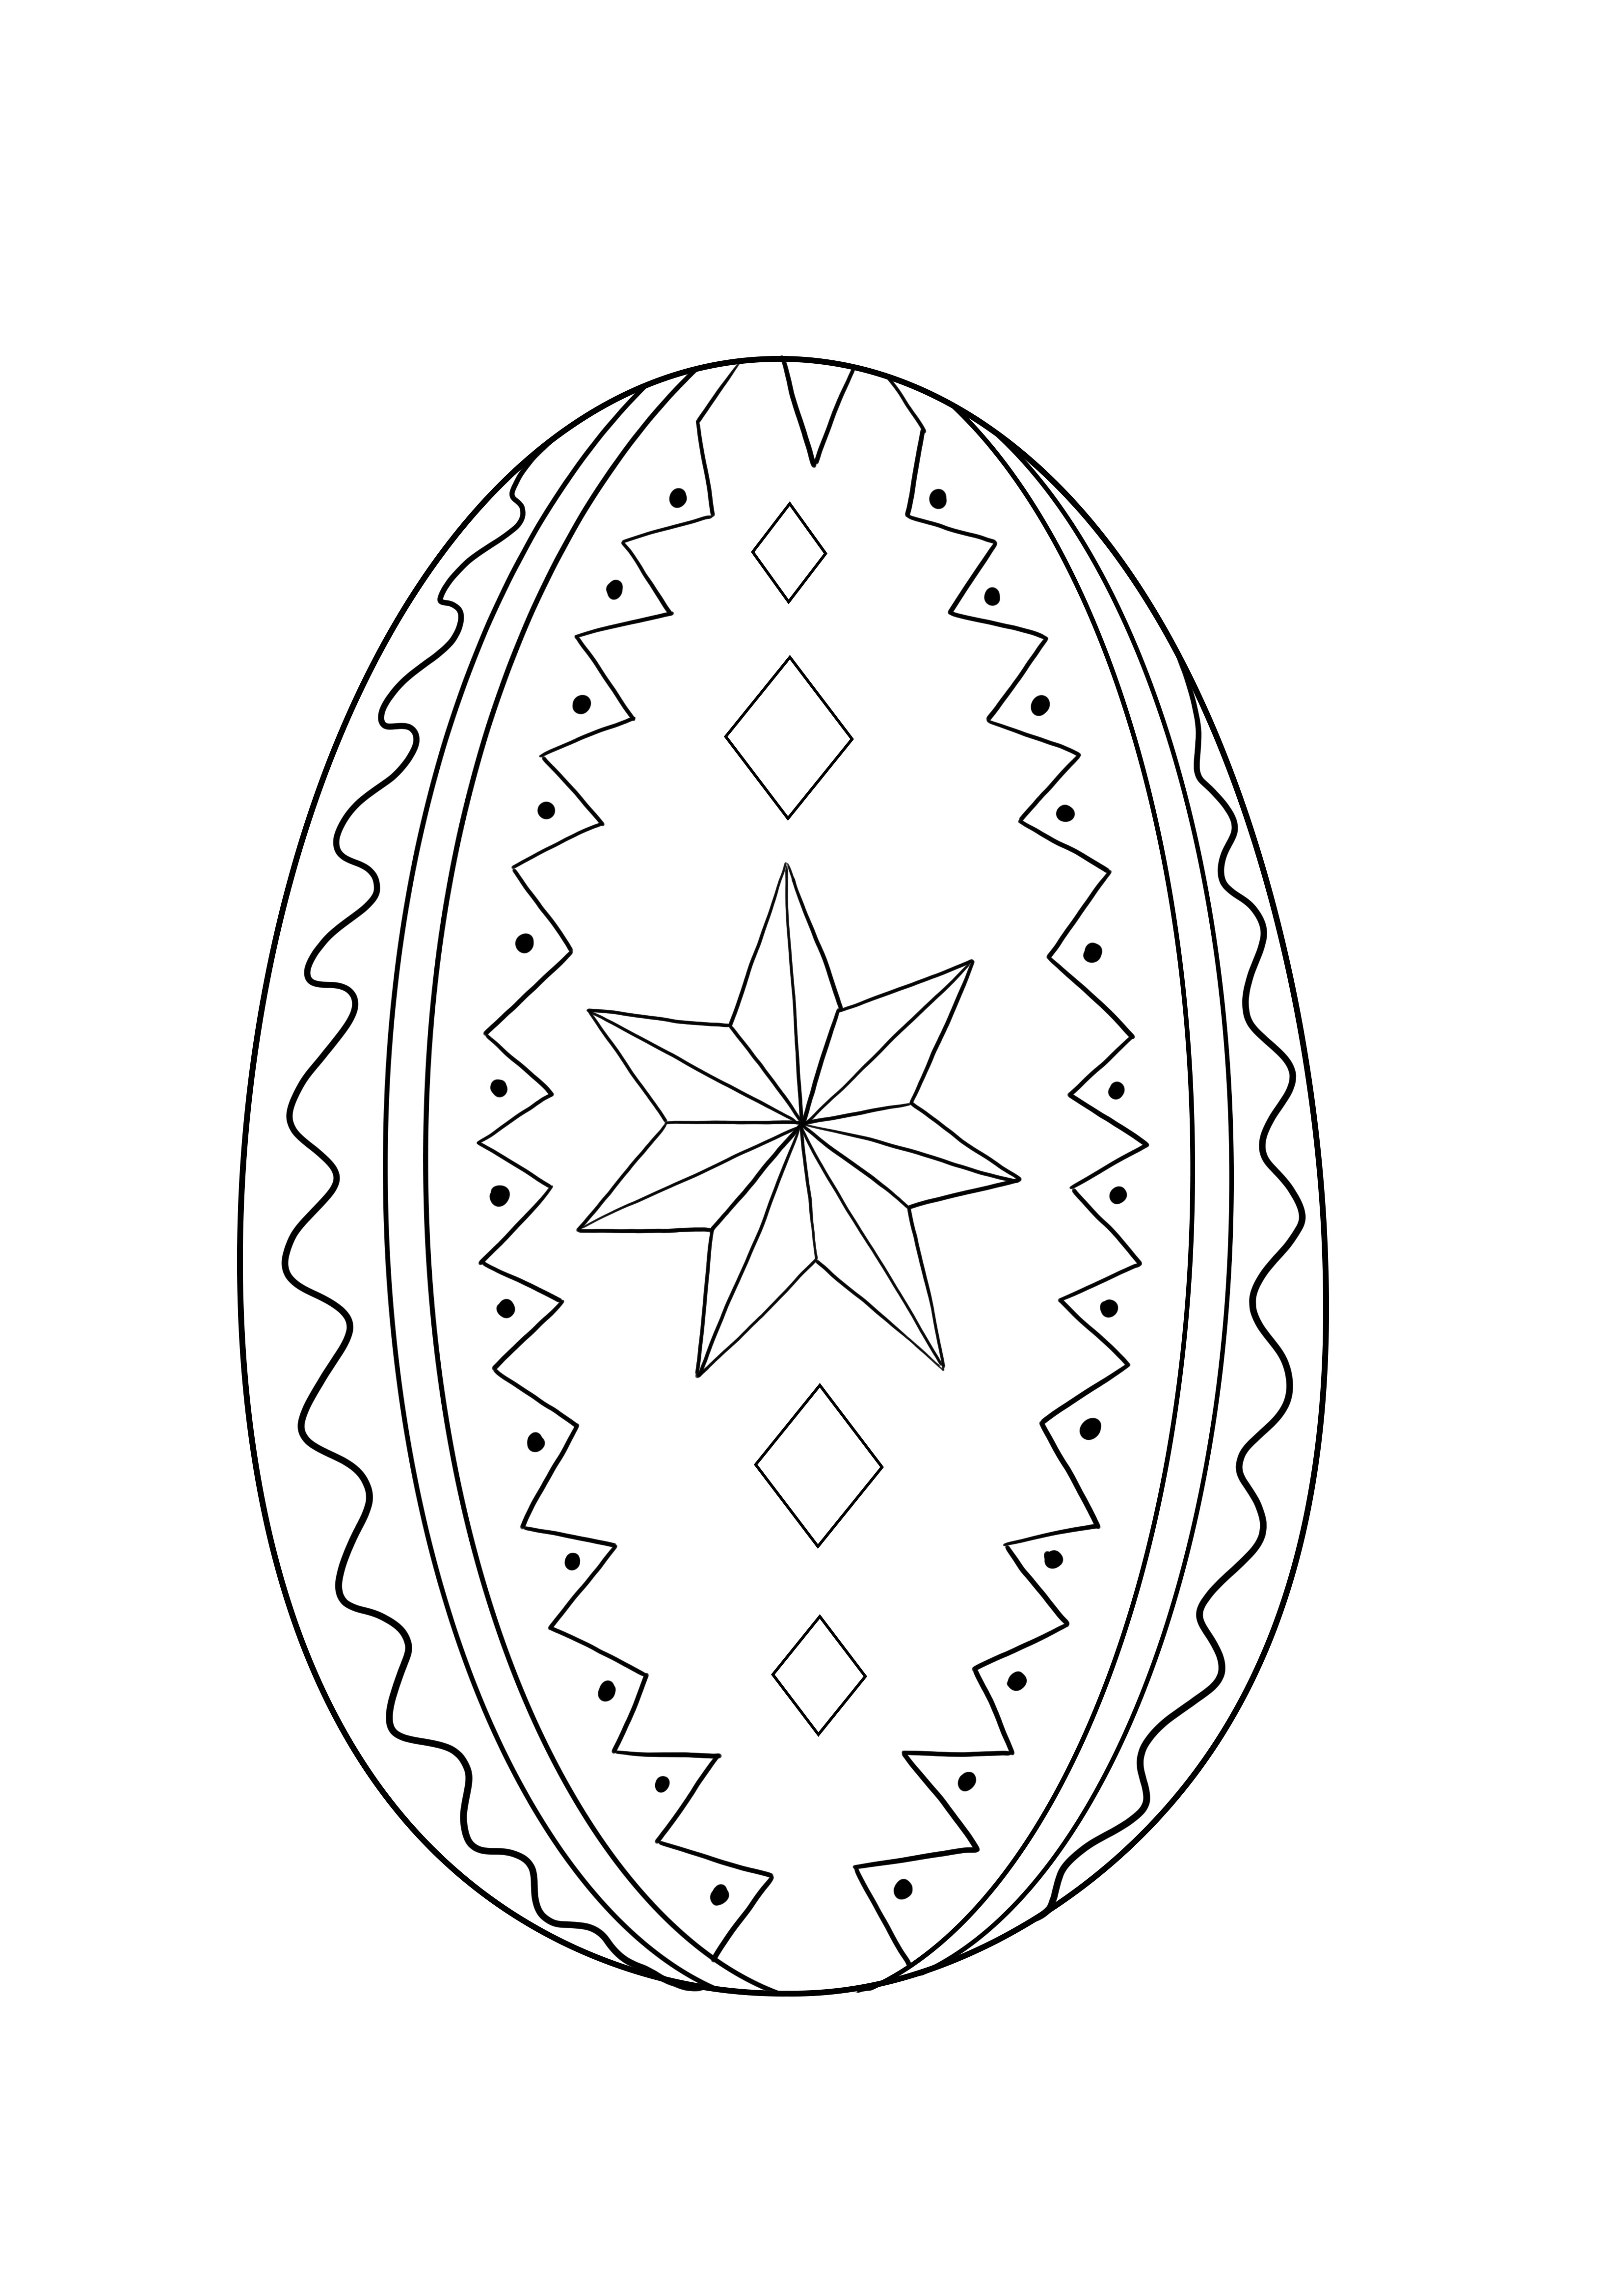 Dibujo de huevos de Pascua decorados para imprimir y colorear